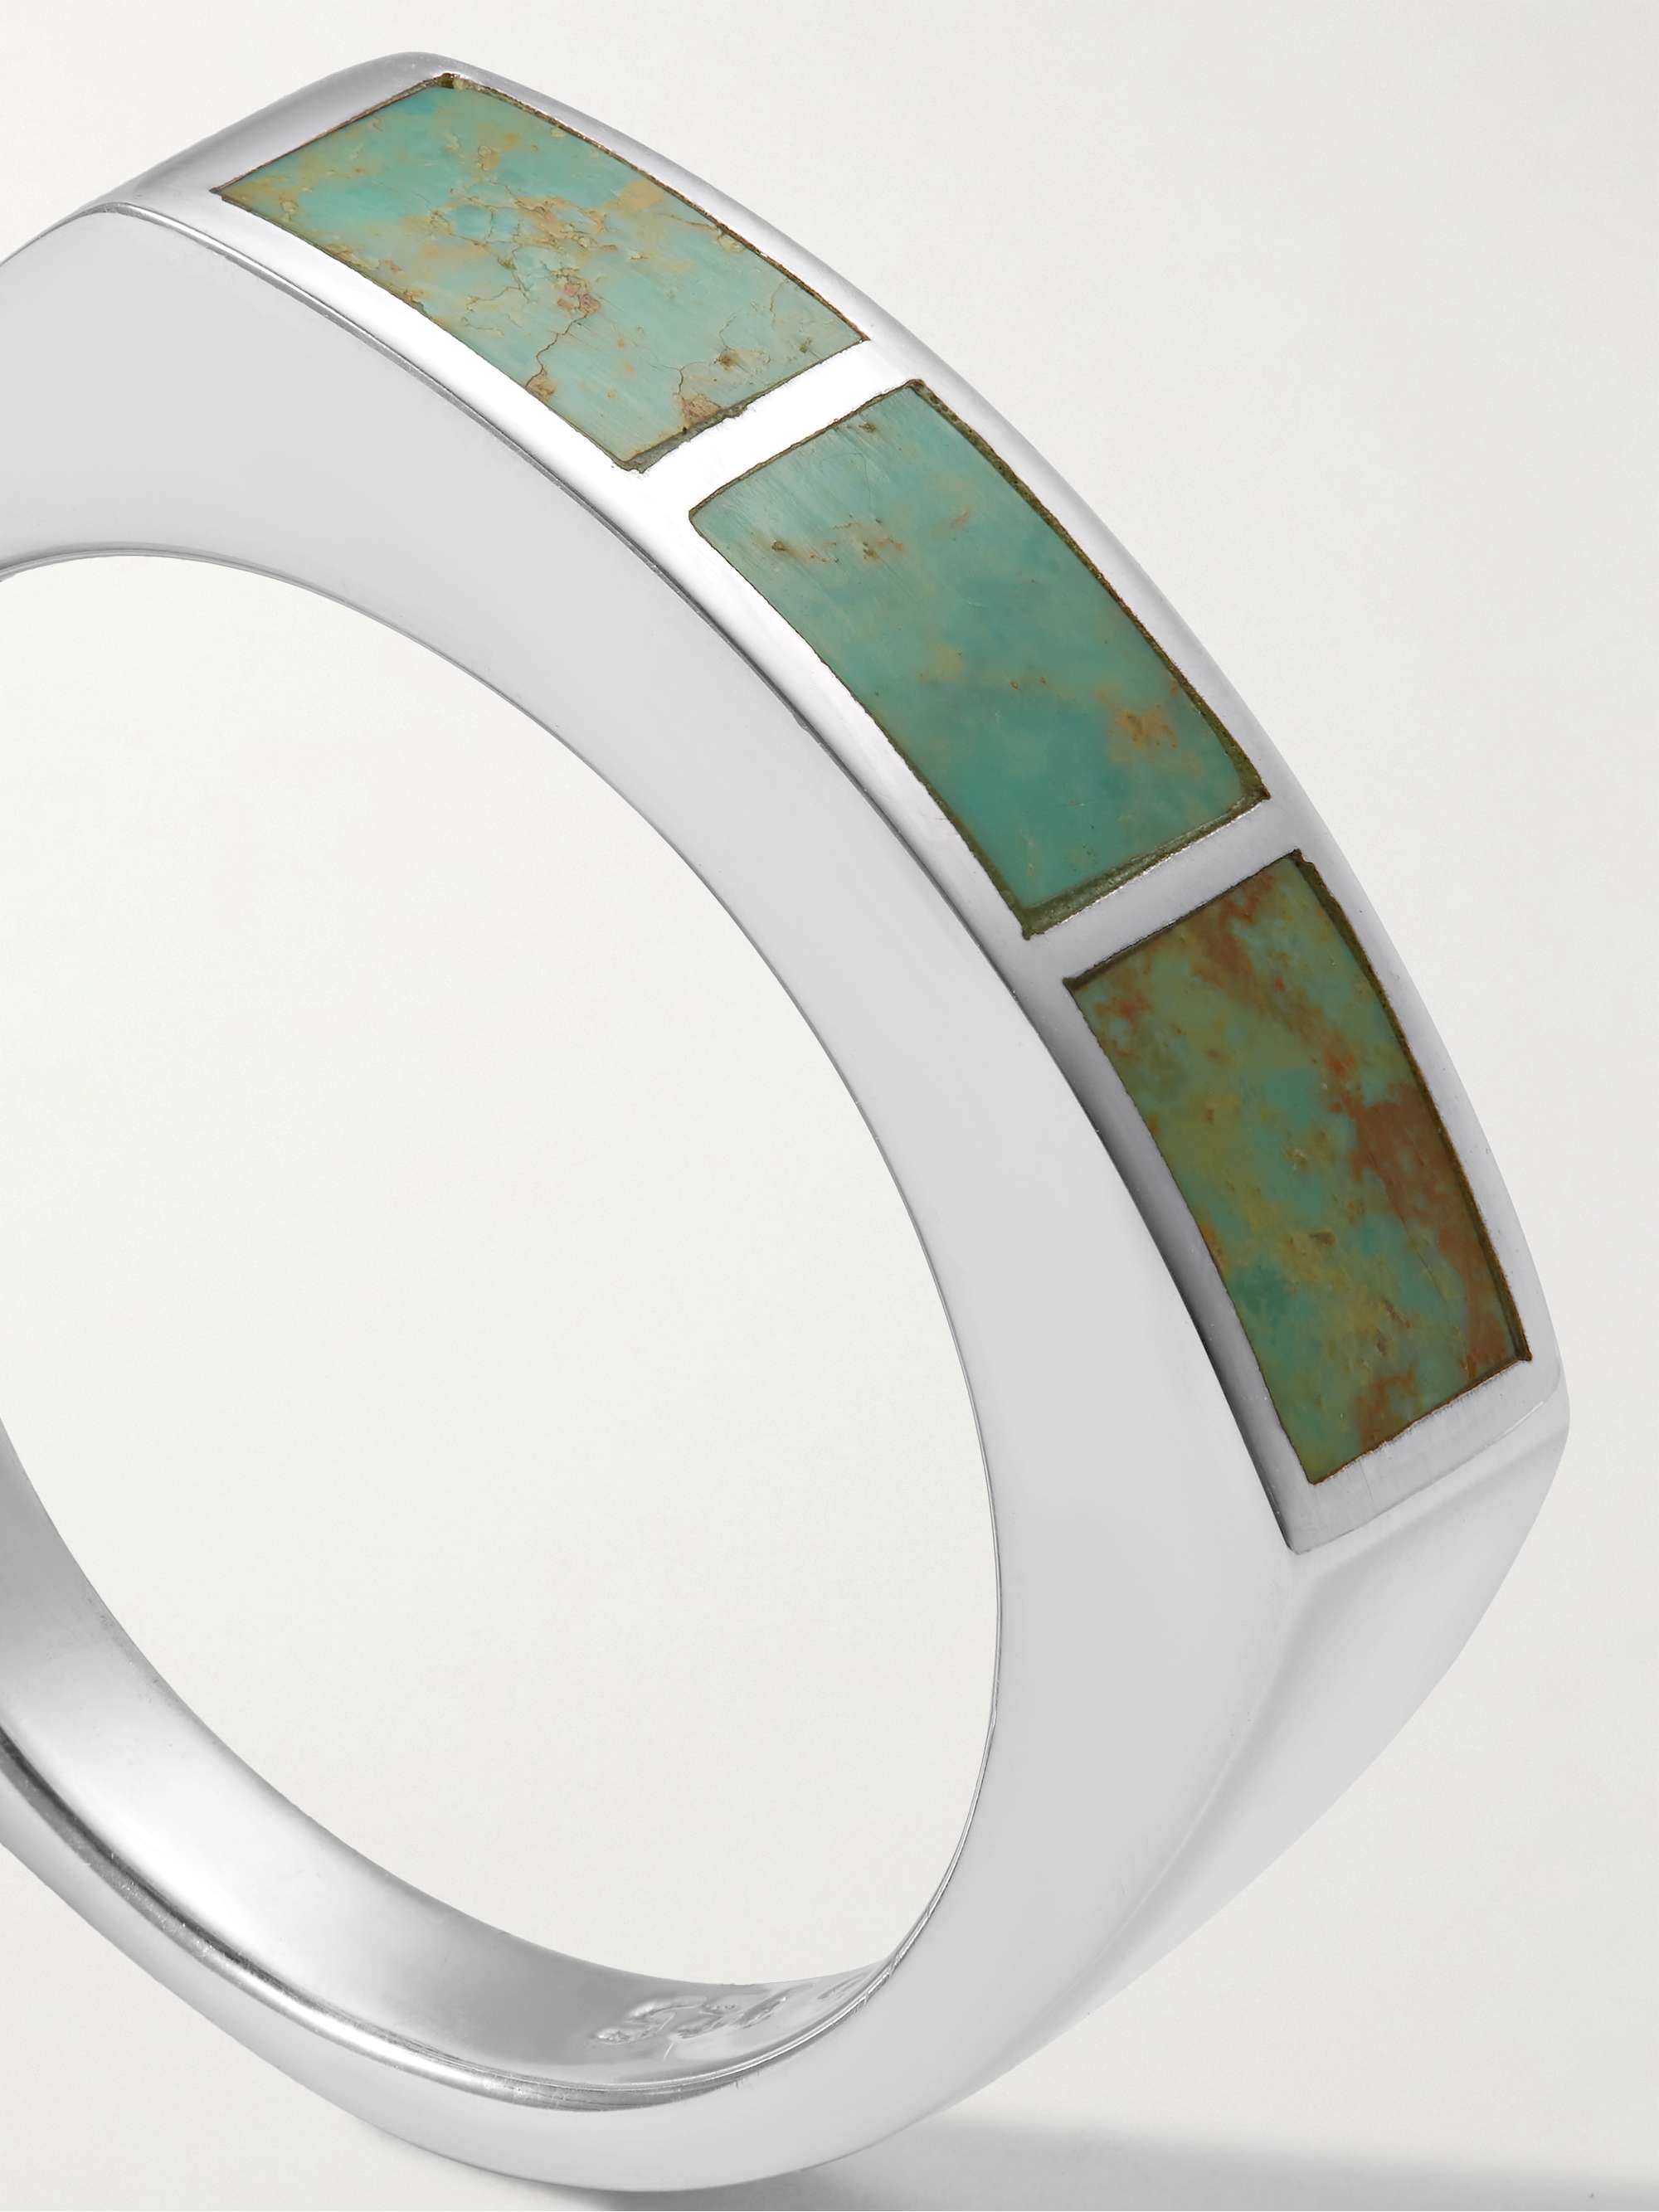 PEYOTE BIRD Watermark Silver Turquoise Ring